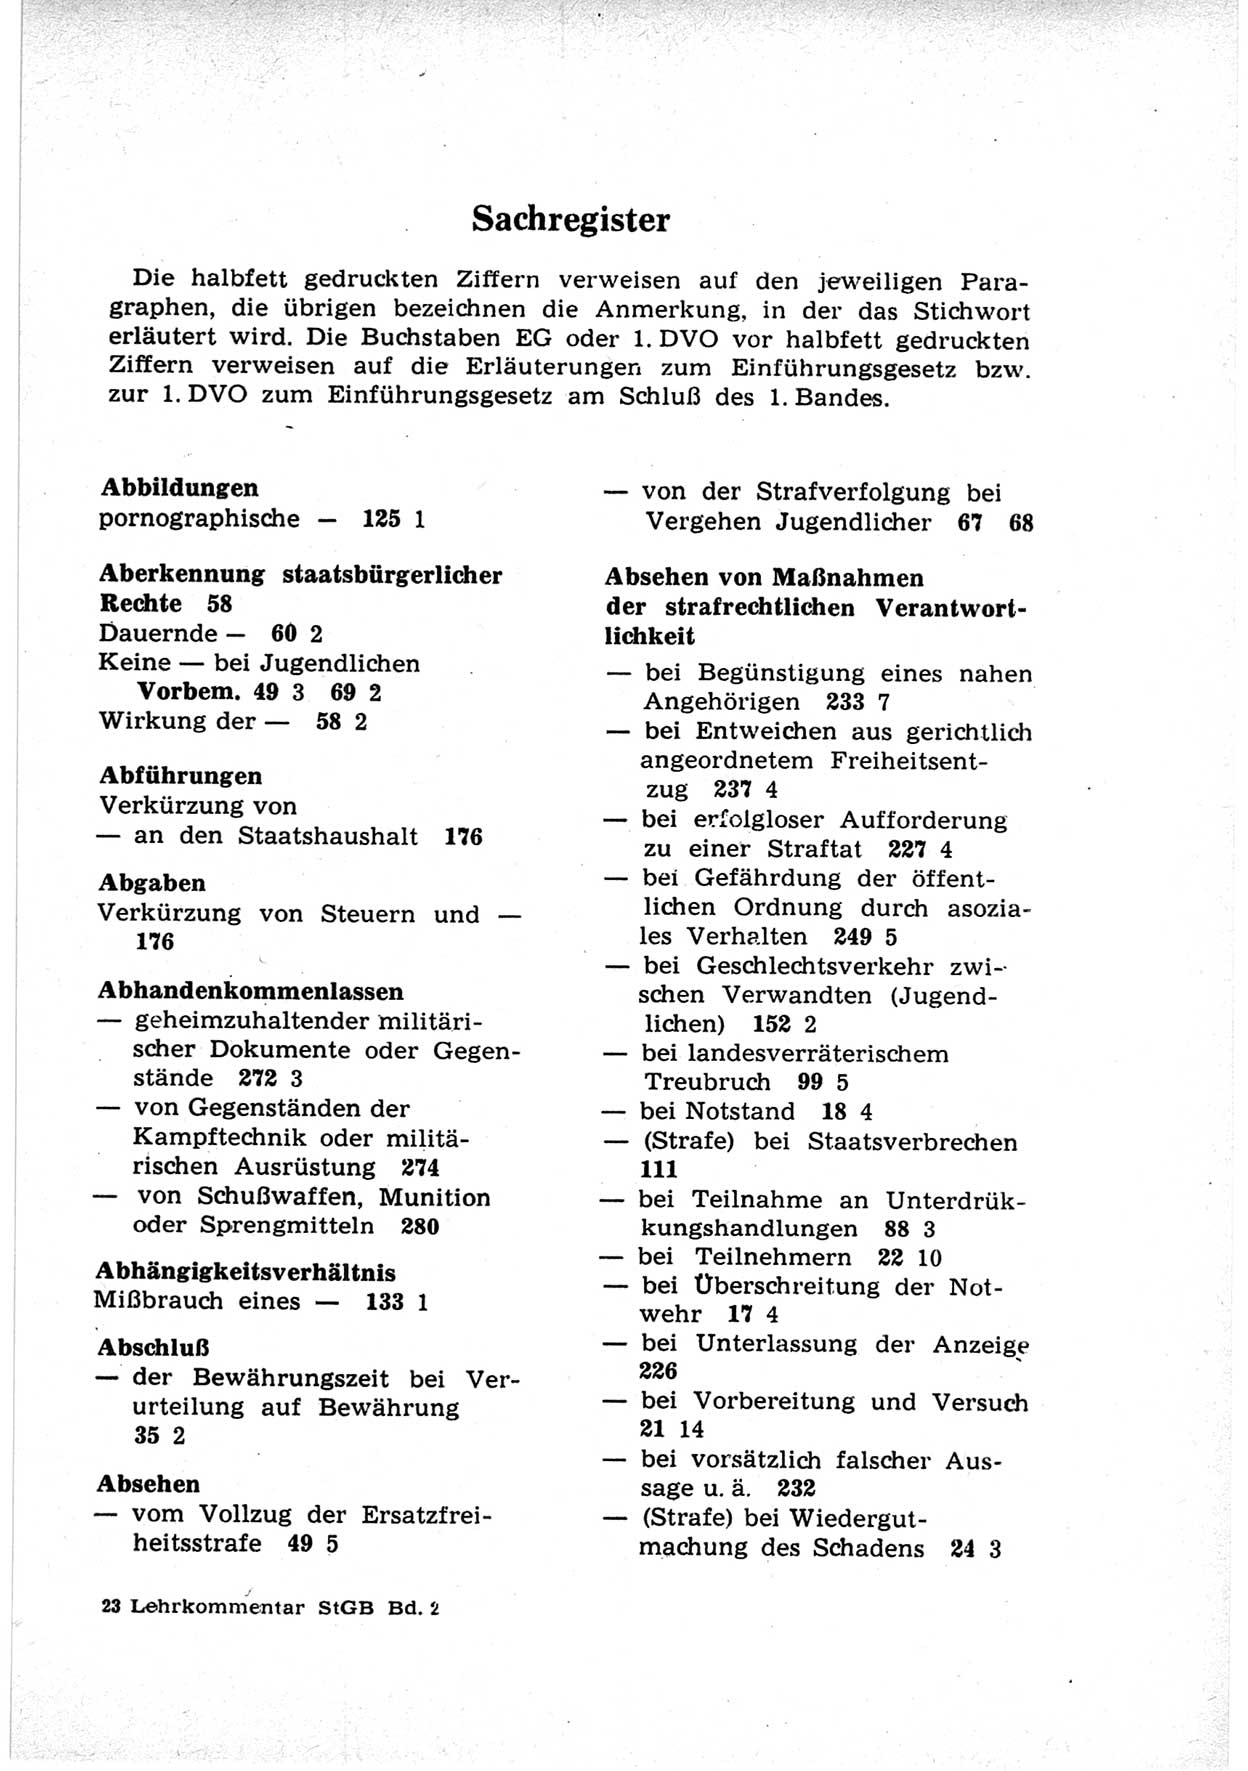 Strafrecht der Deutschen Demokratischen Republik (DDR), Lehrkommentar zum Strafgesetzbuch (StGB), Besonderer Teil 1969, Seite 353 (Strafr. DDR Lehrkomm. StGB BT 1969, S. 353)